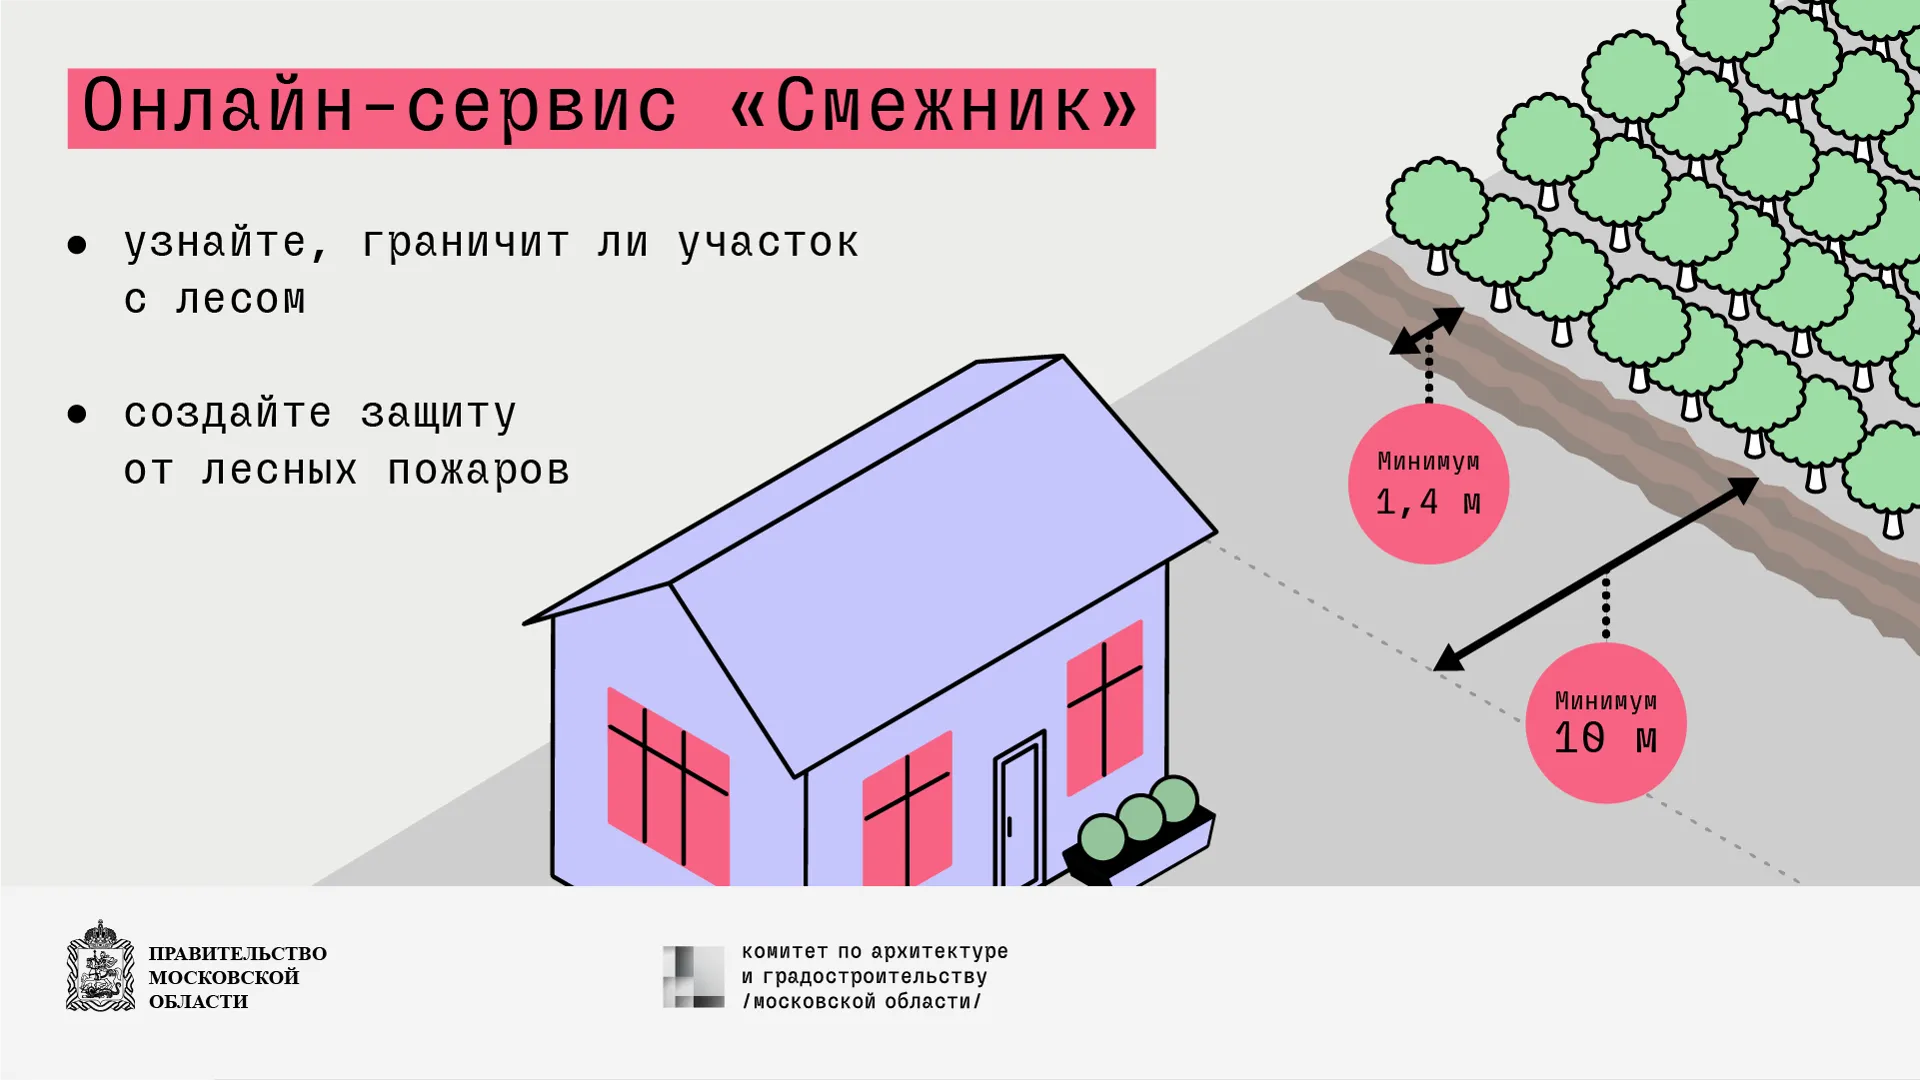 Онлайн-сервис «Смежник» поможет жителям Подмосковья узнать о границах участка